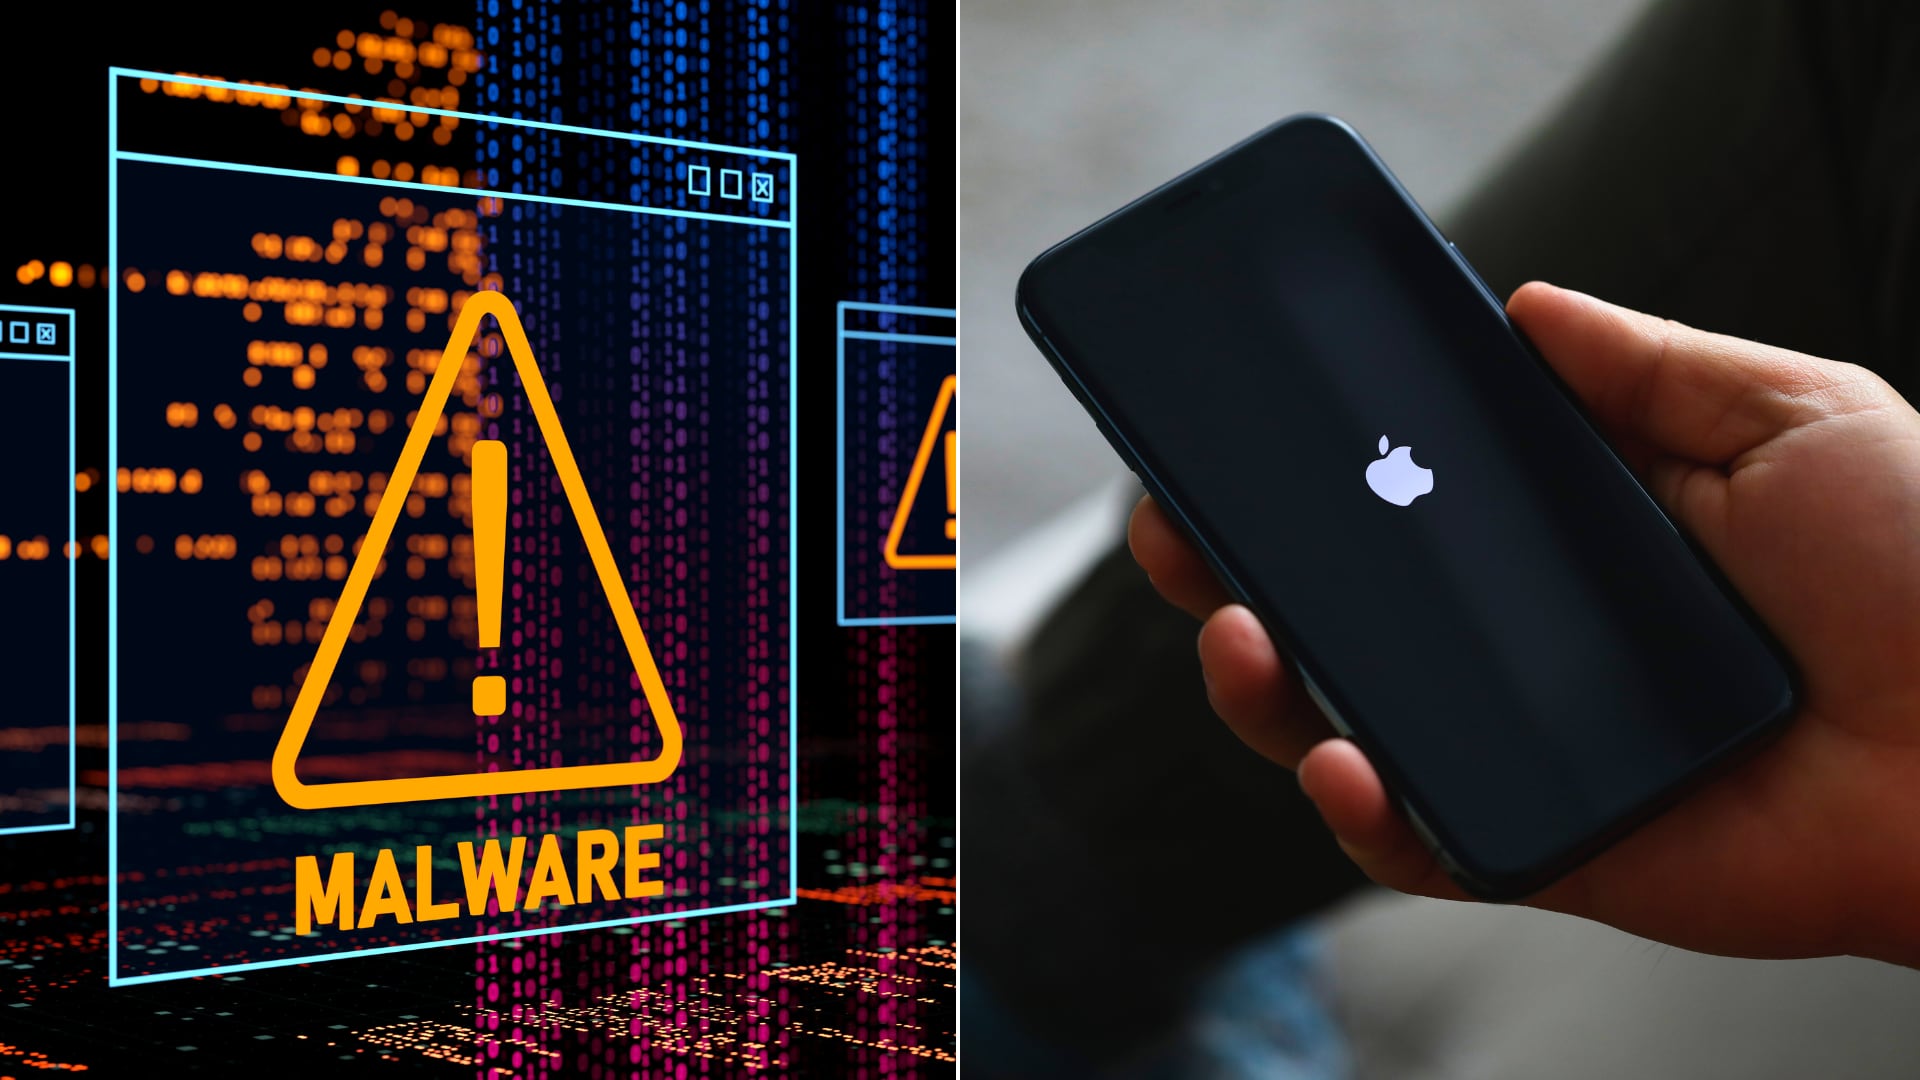 Apple envió alertas a usuarios de 98 países sobre software espía en iPhones, enfatizando la seriedad y sofisticación de la amenaza.